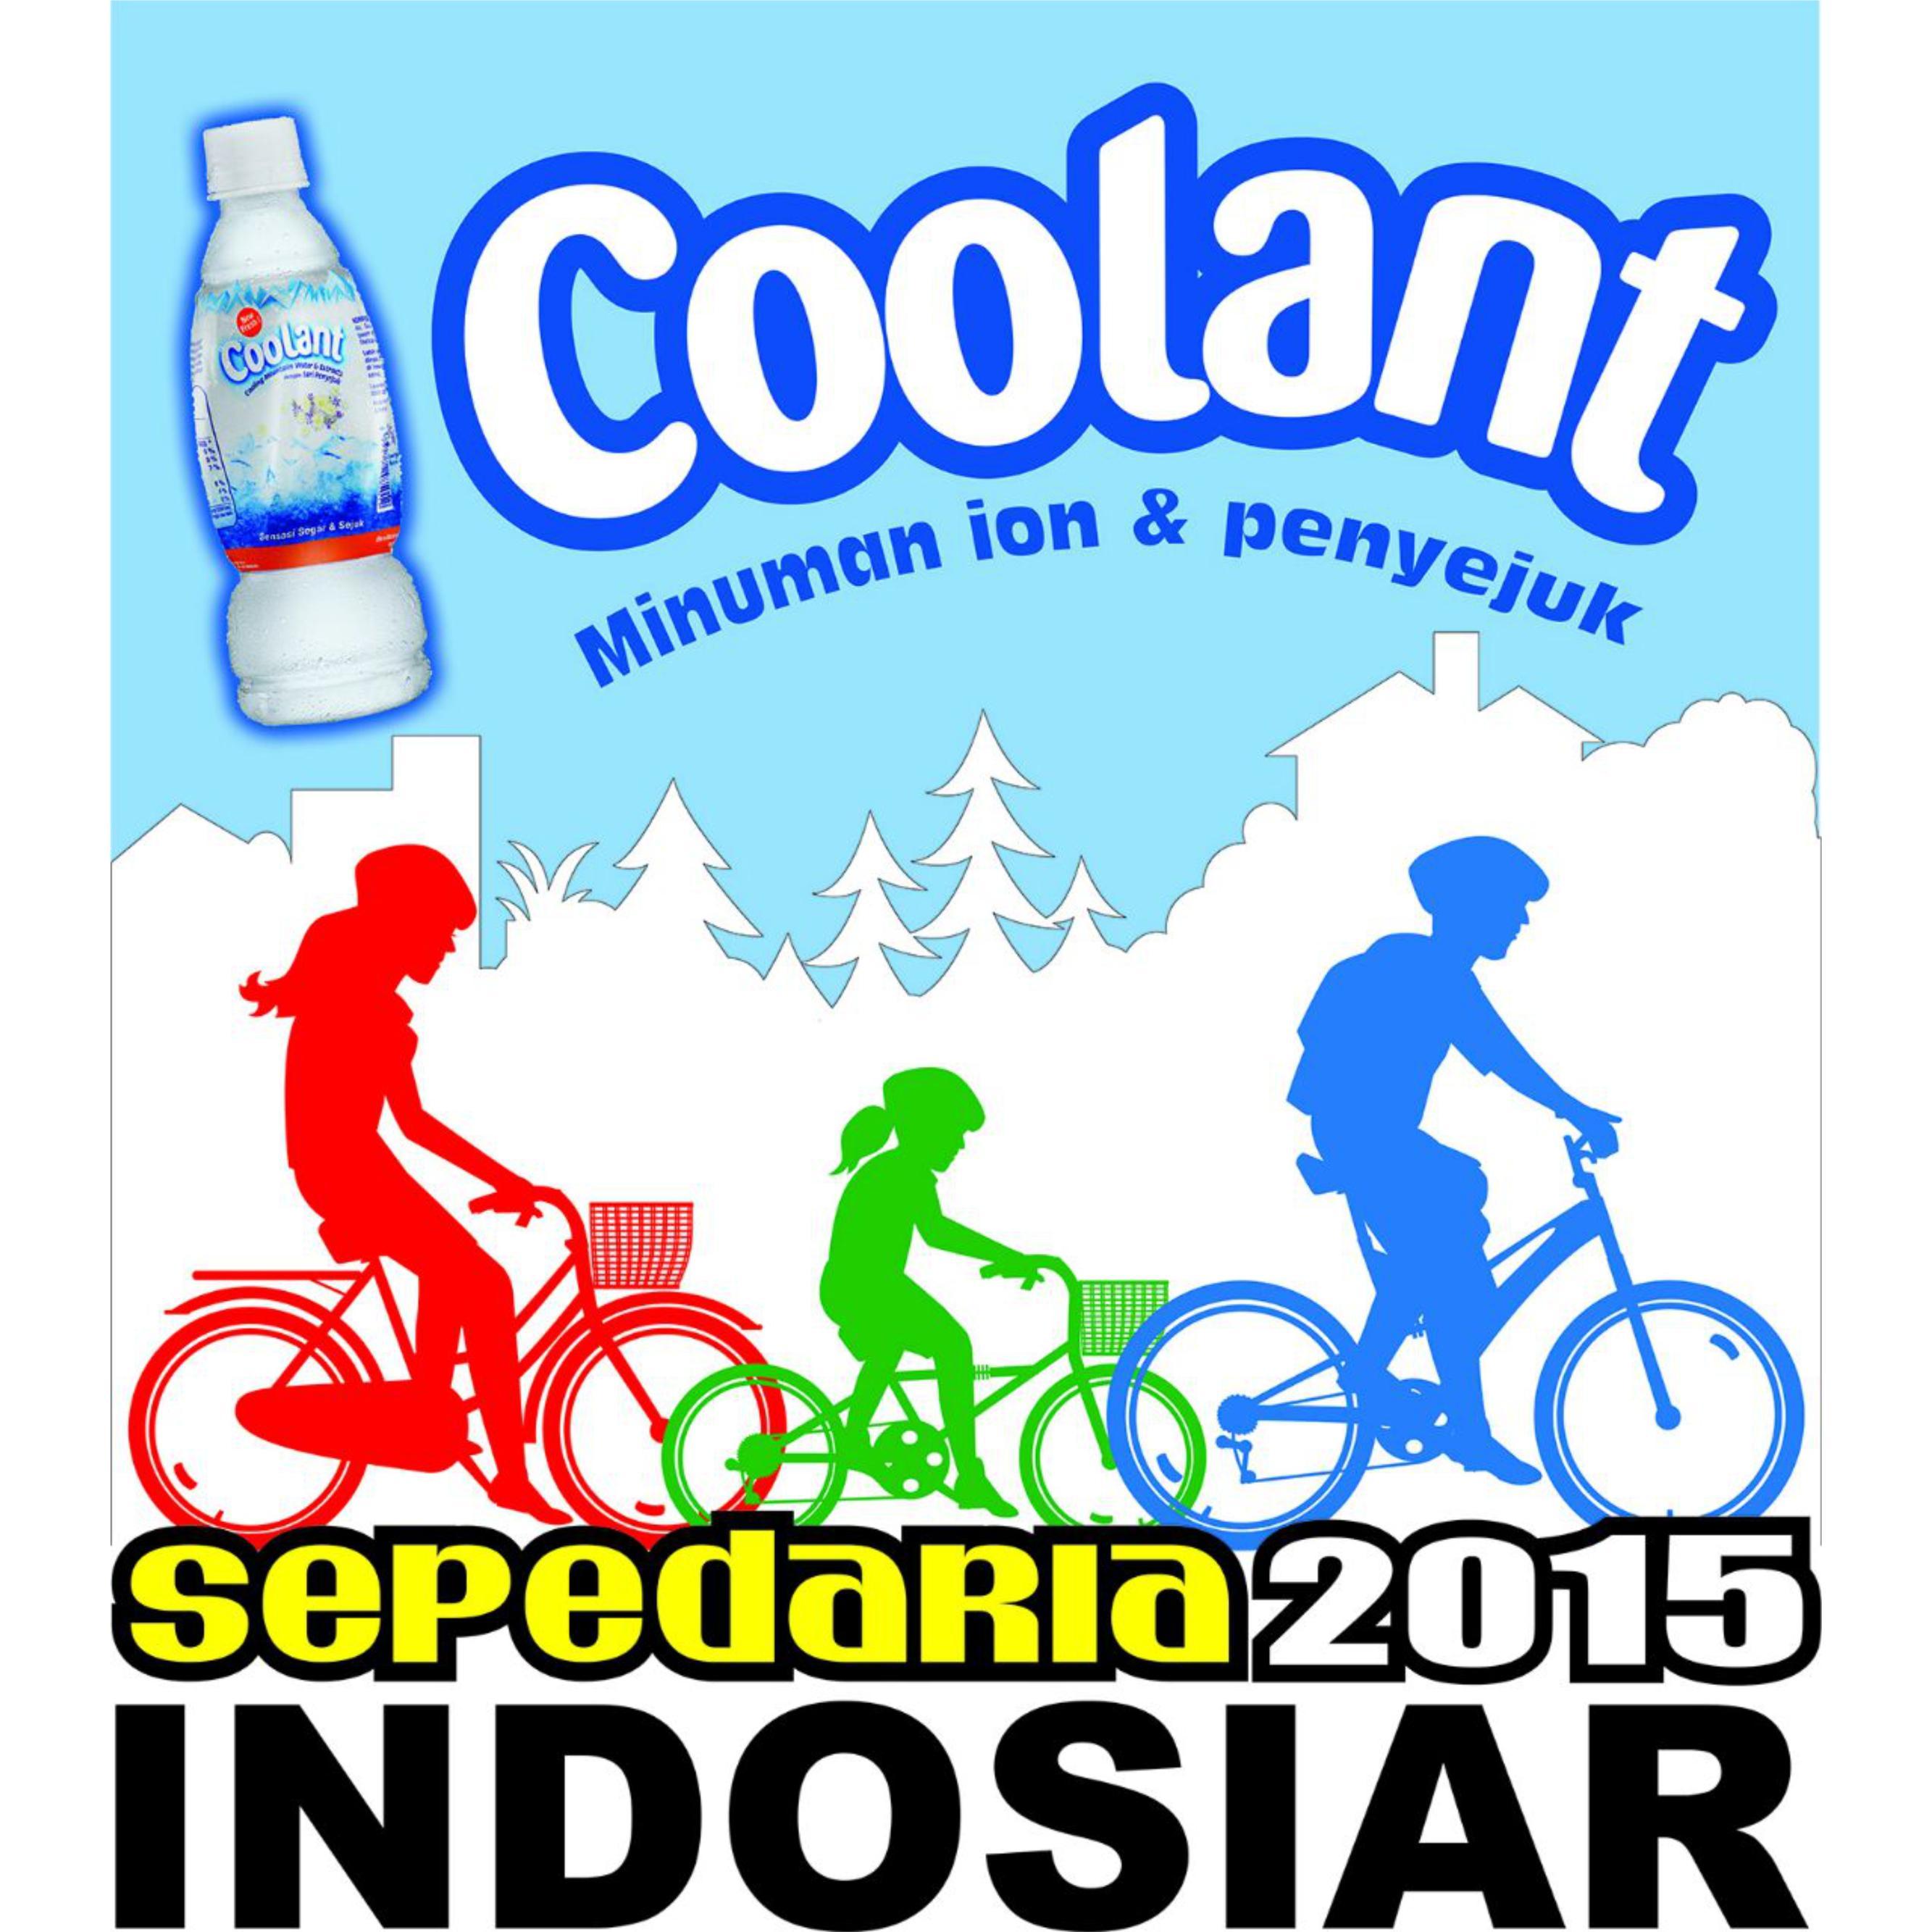 Sepeda Ria 2015 On Twitter 9 Toko Sepeda Sumber Jaya Bicycle Jl Palmerah Utara No 94 Jakarta Barat Telp 021 93007217